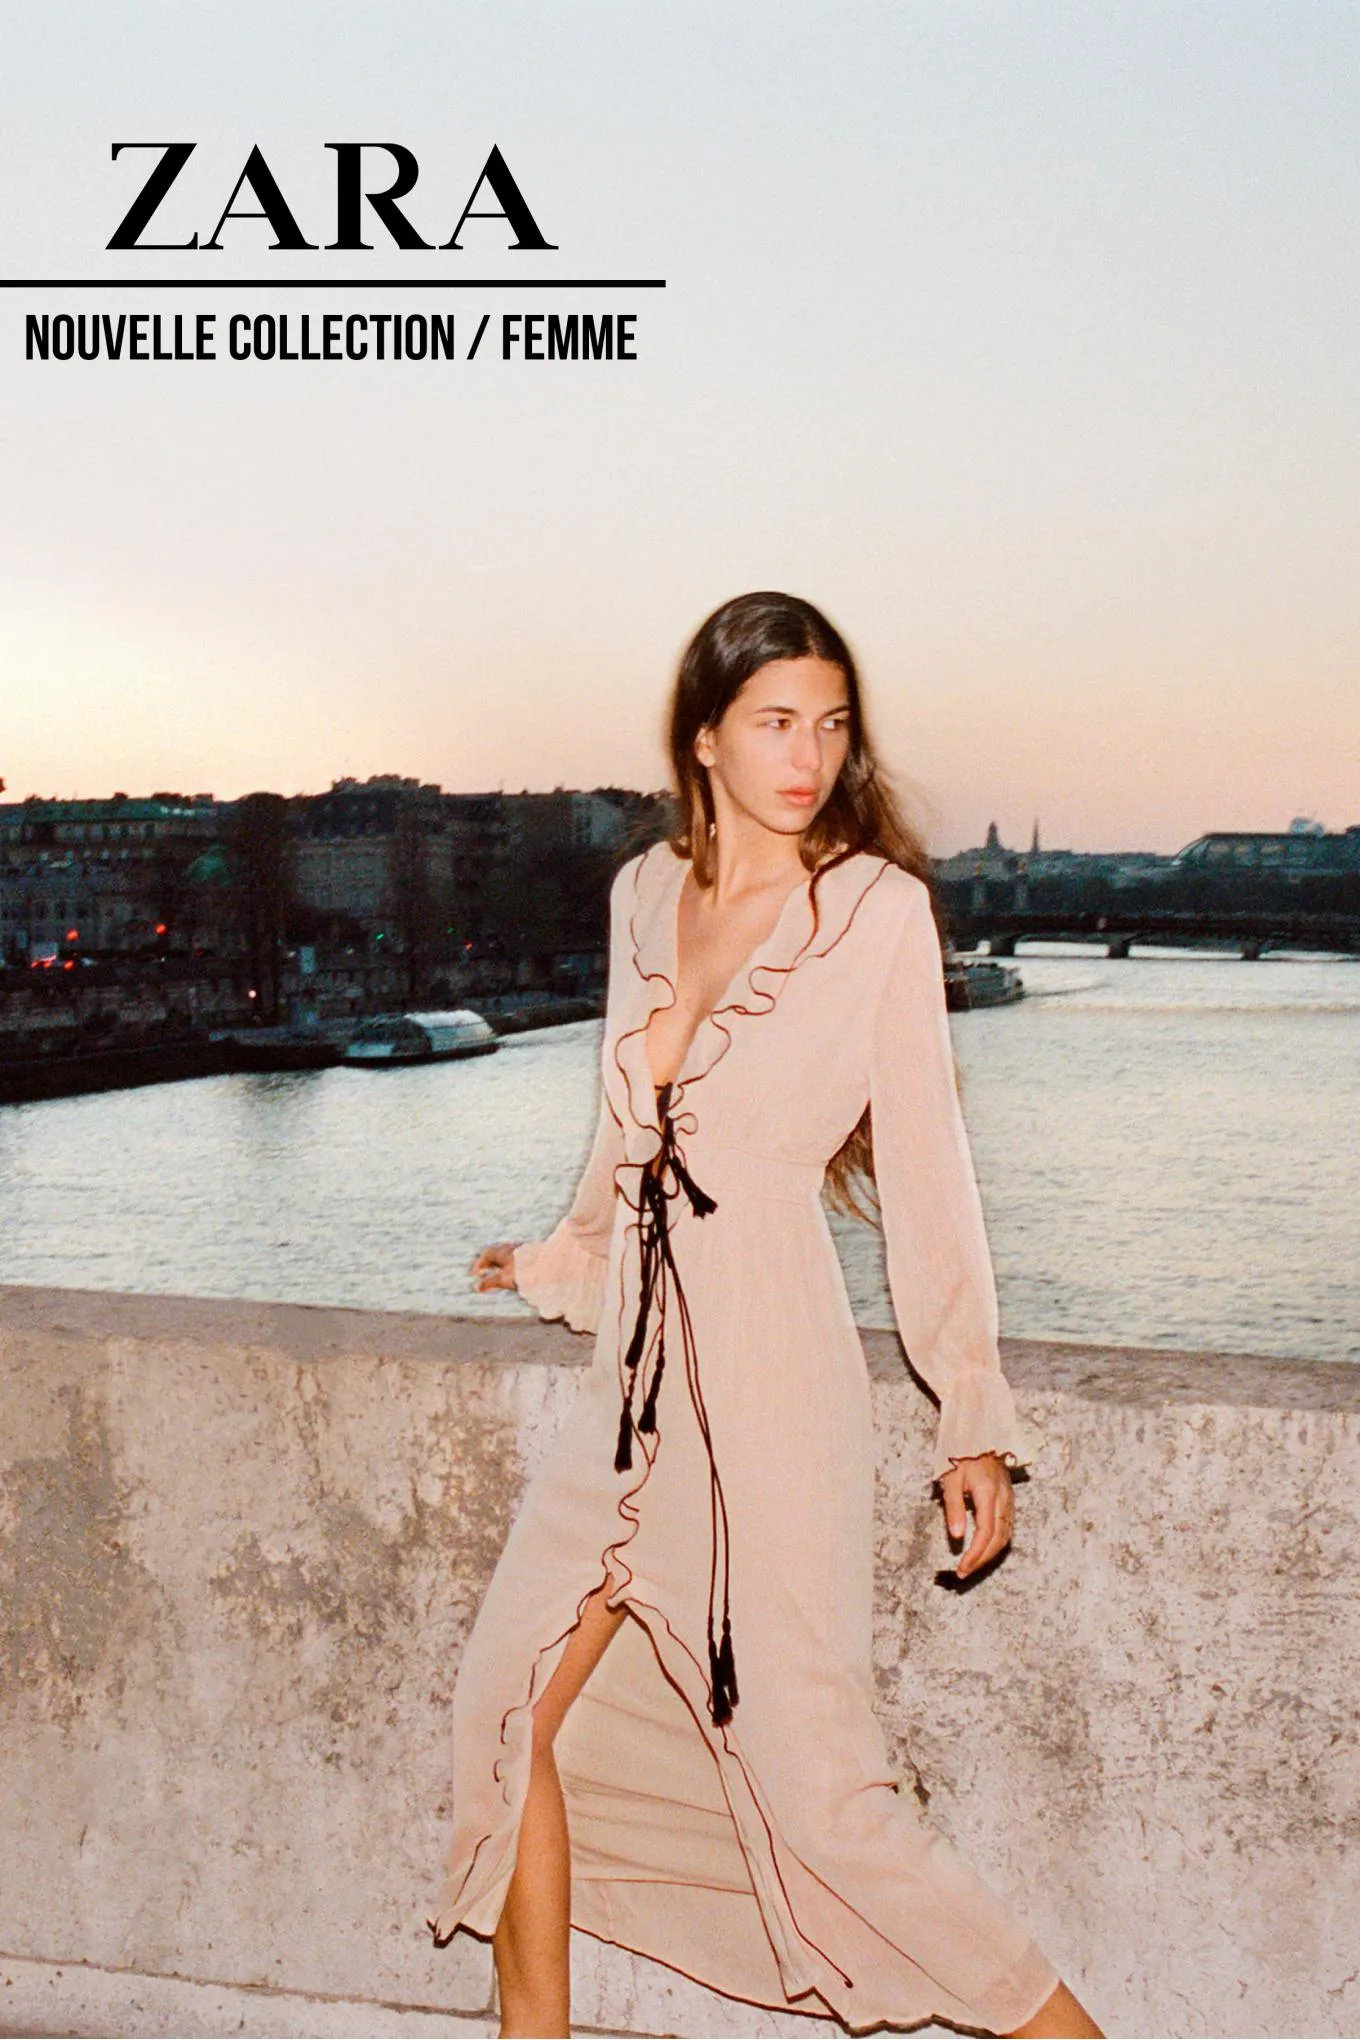 Catalogue Nouvelle Collection / Femme, page 00001